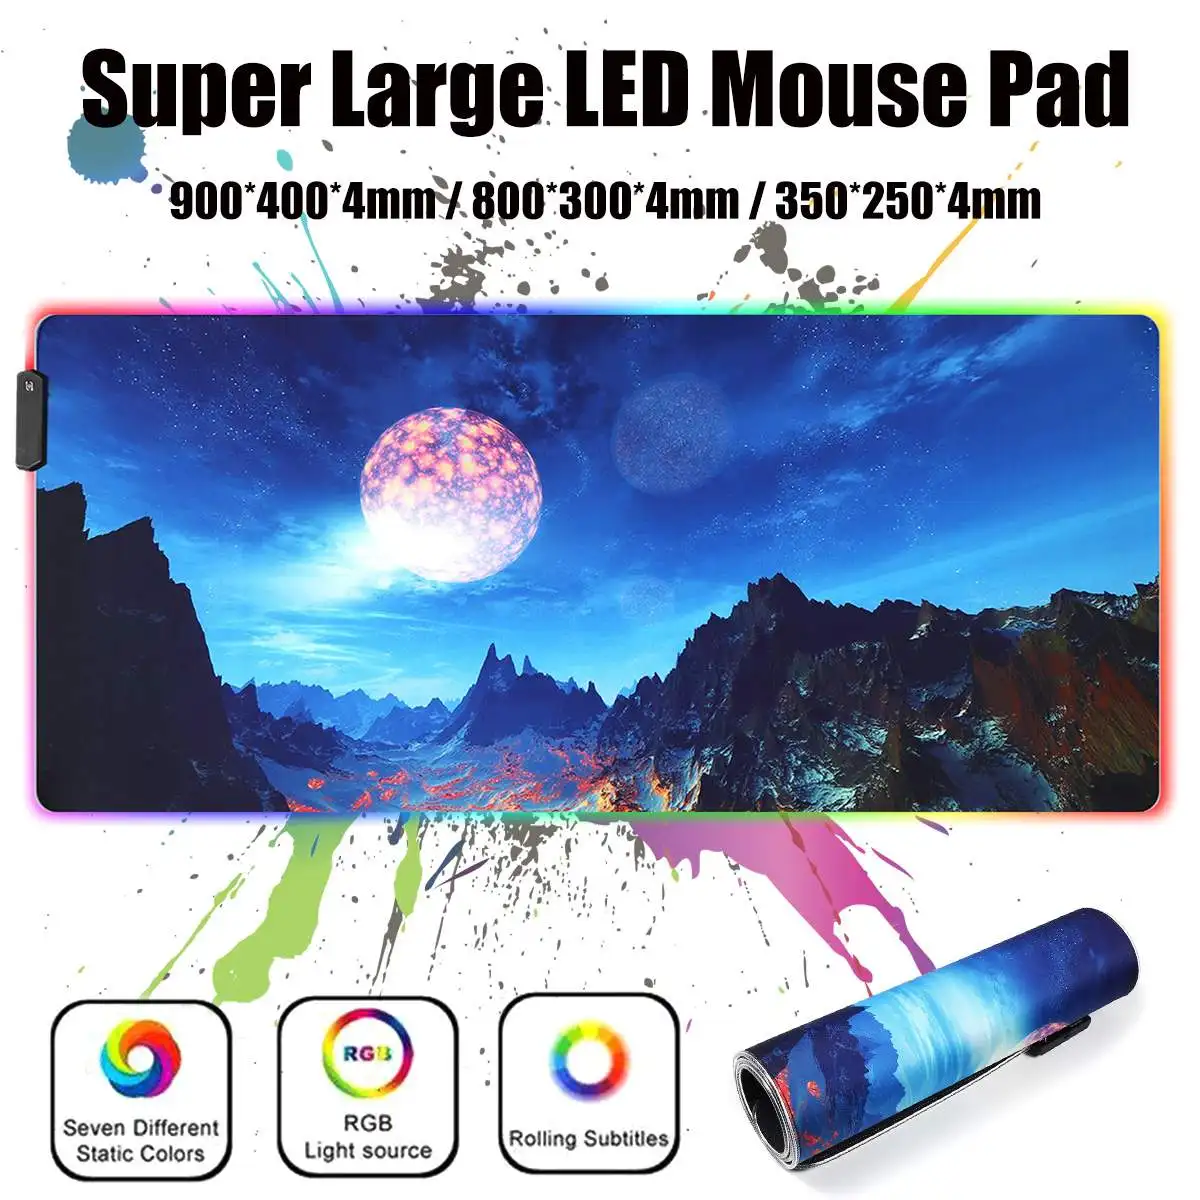 Цветная(RGB) светодиодный большой игровой Мышь Pad компьютерный геймер USB проводной светодиодный освещение Красочный Световой Non-slip Мышь коврик стол коврик для мыши коврик